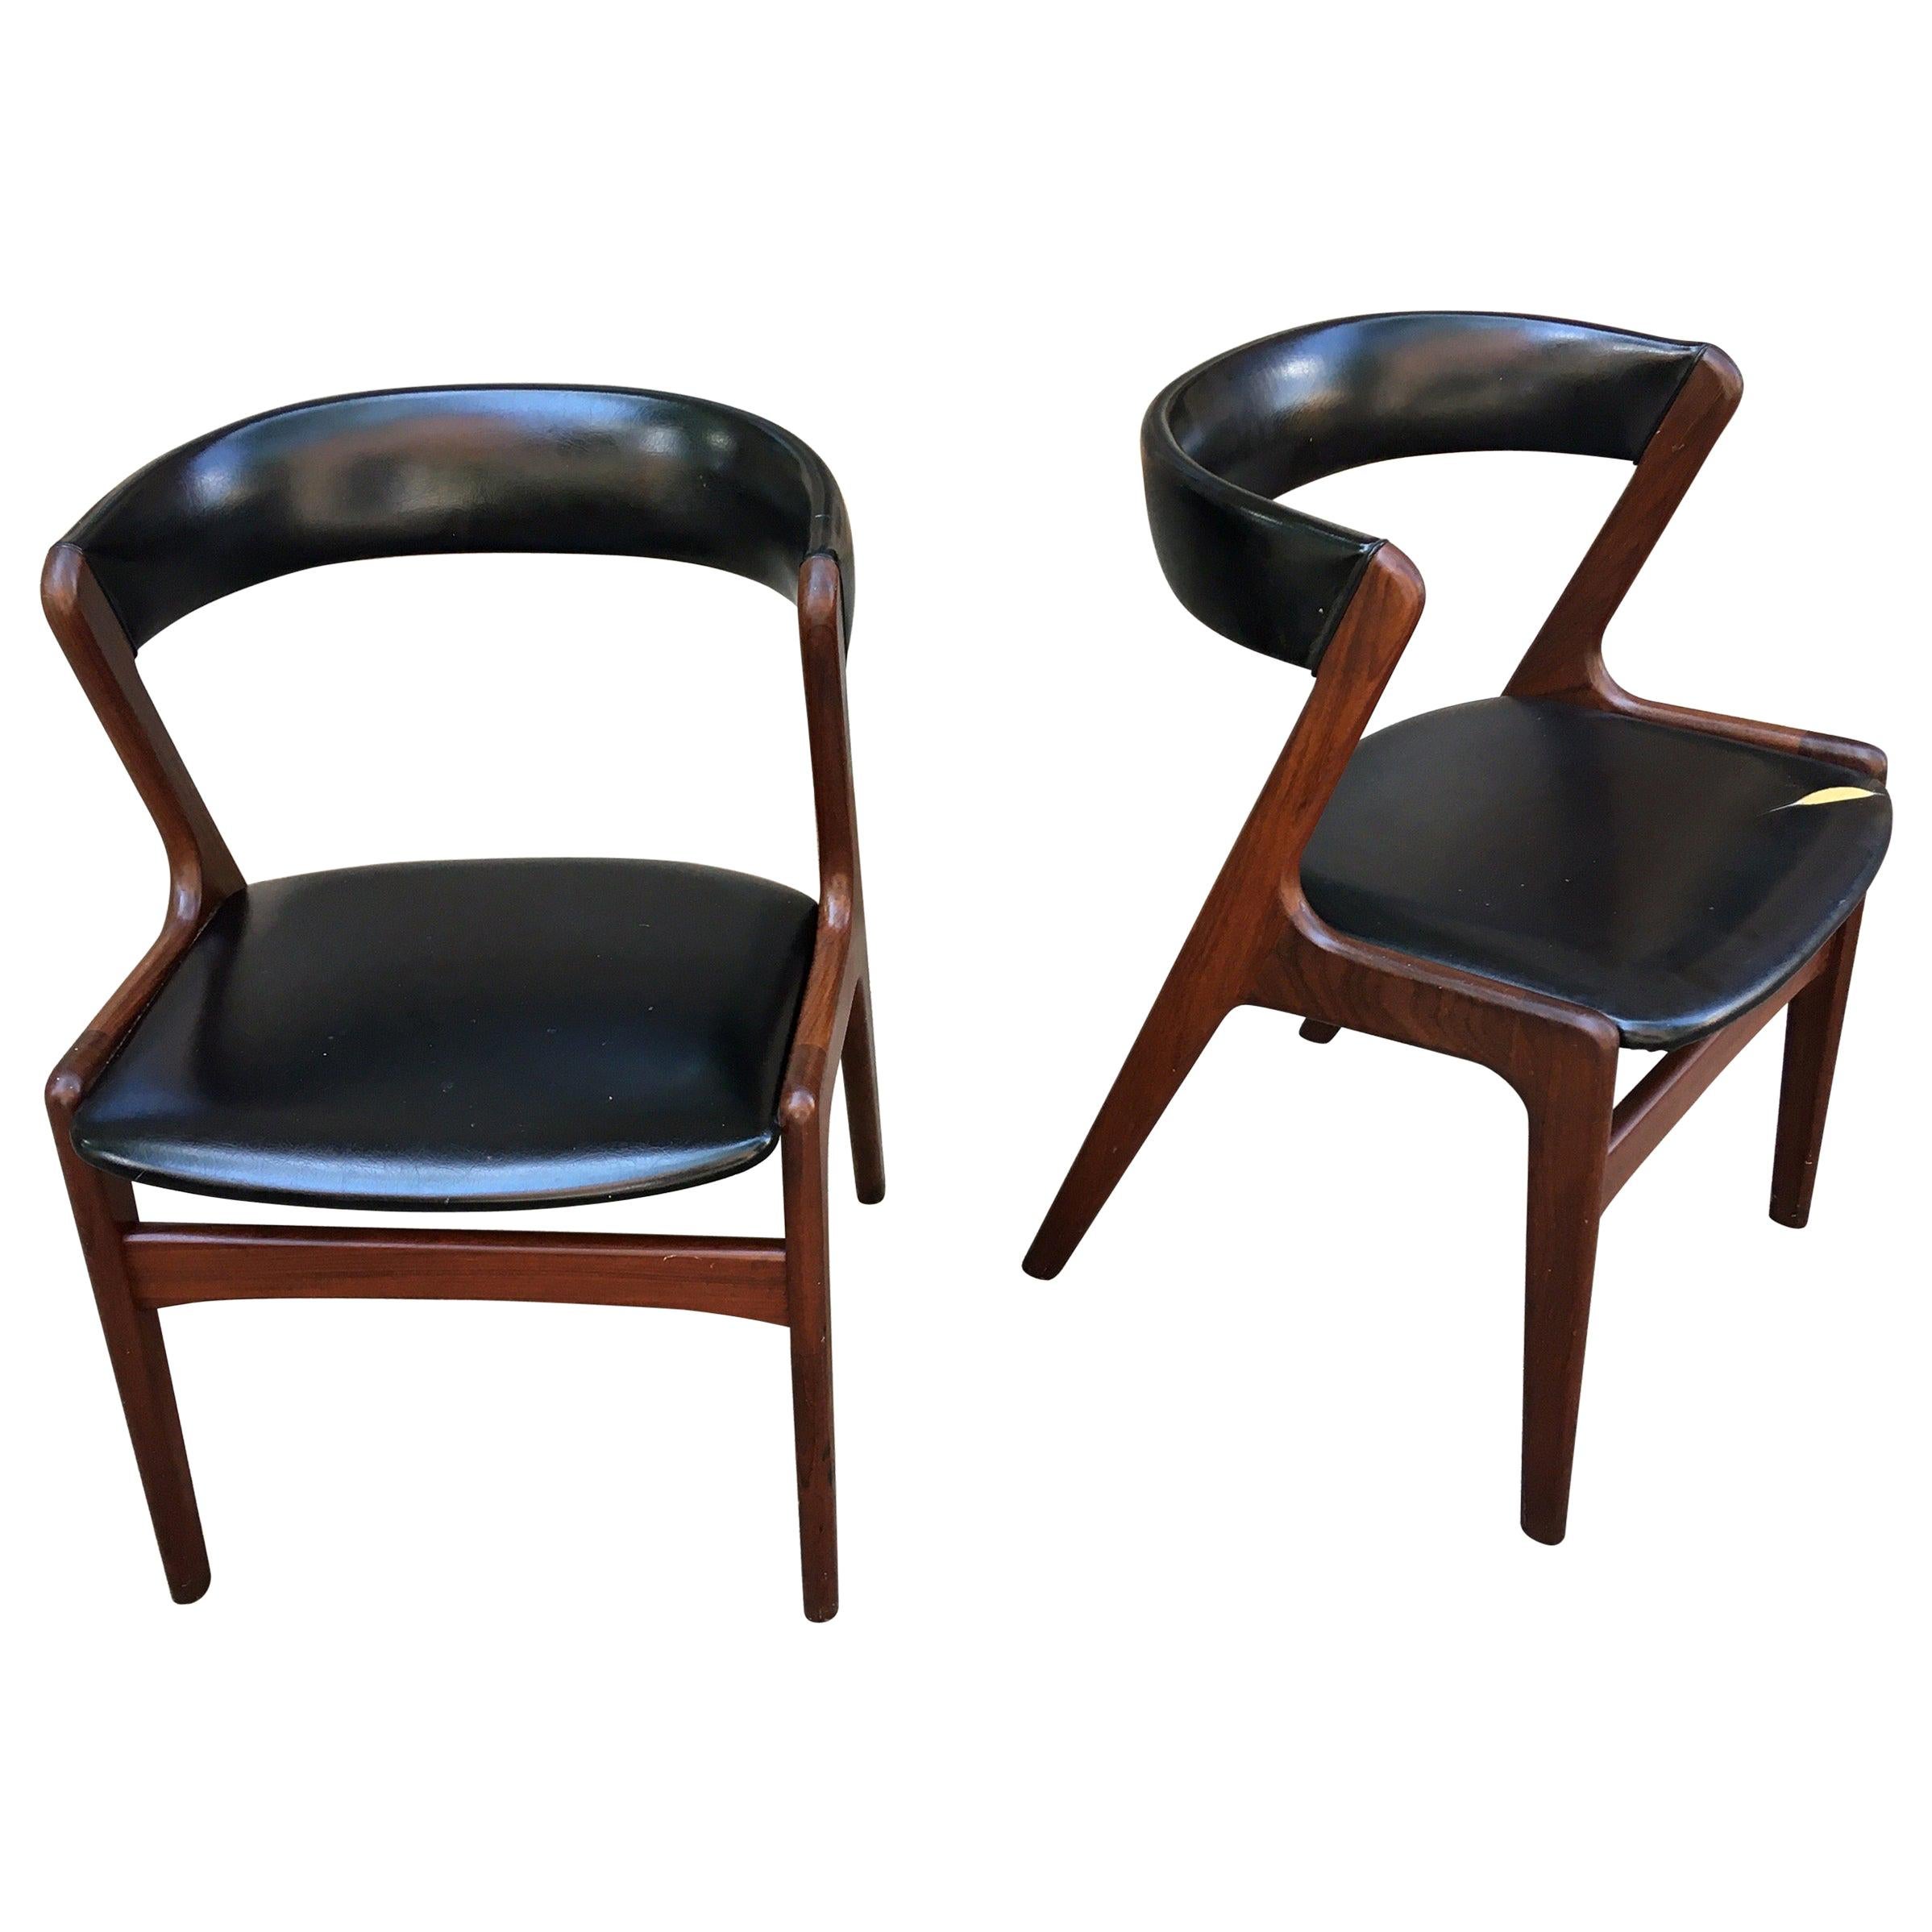 Pair of Kai Kristiansen Style Teak Chairs